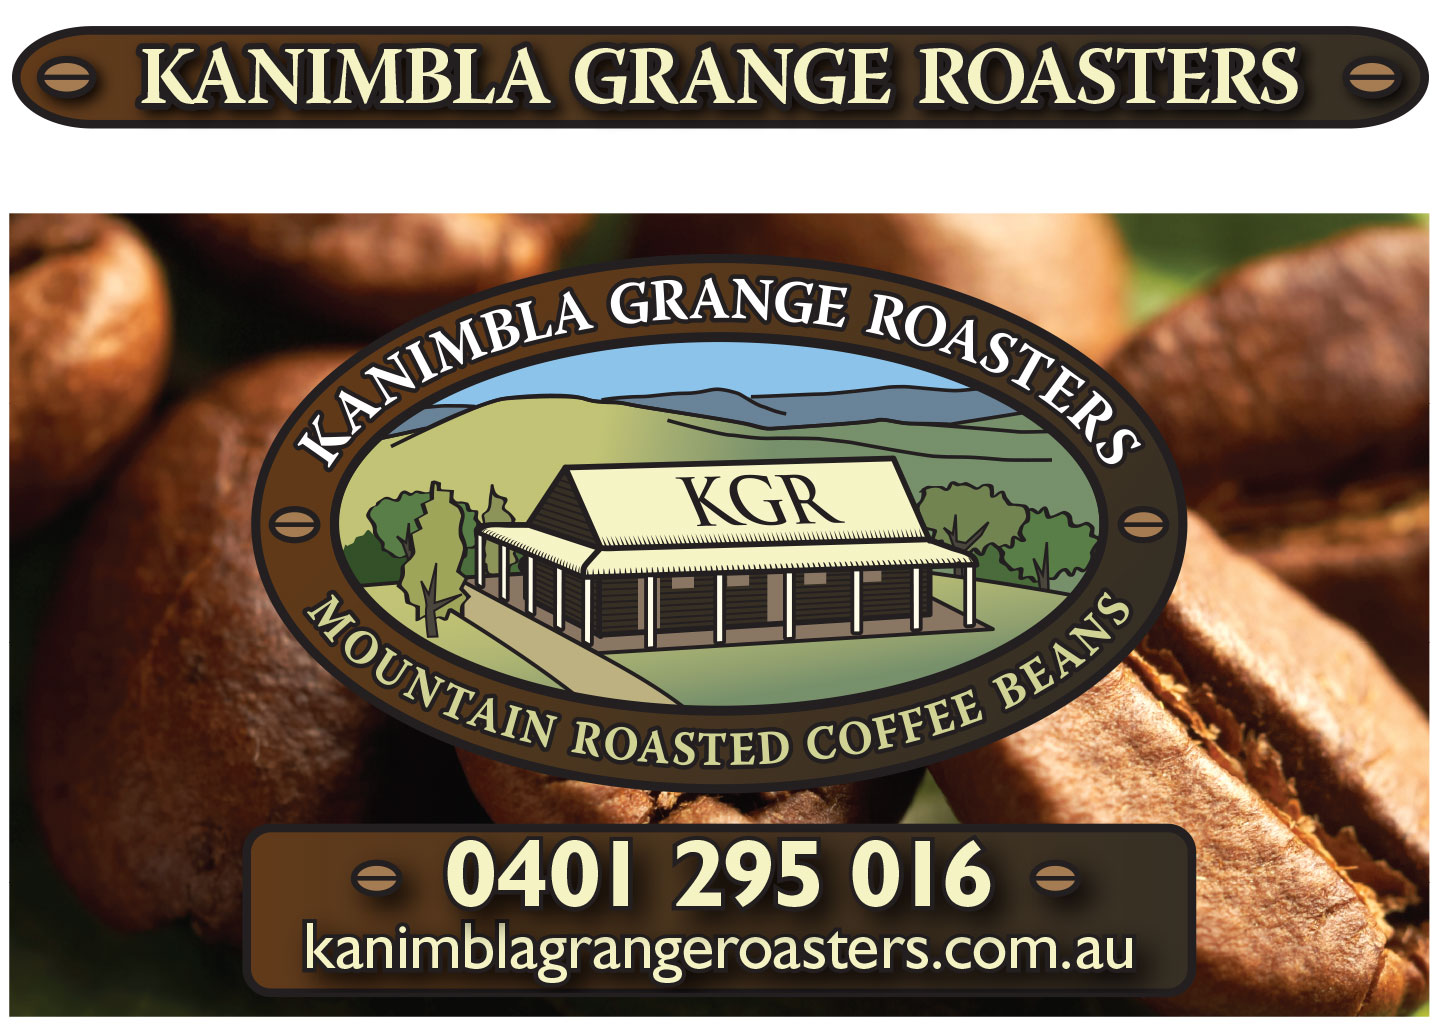 Kanimbla Grange Roasters vehicle signage